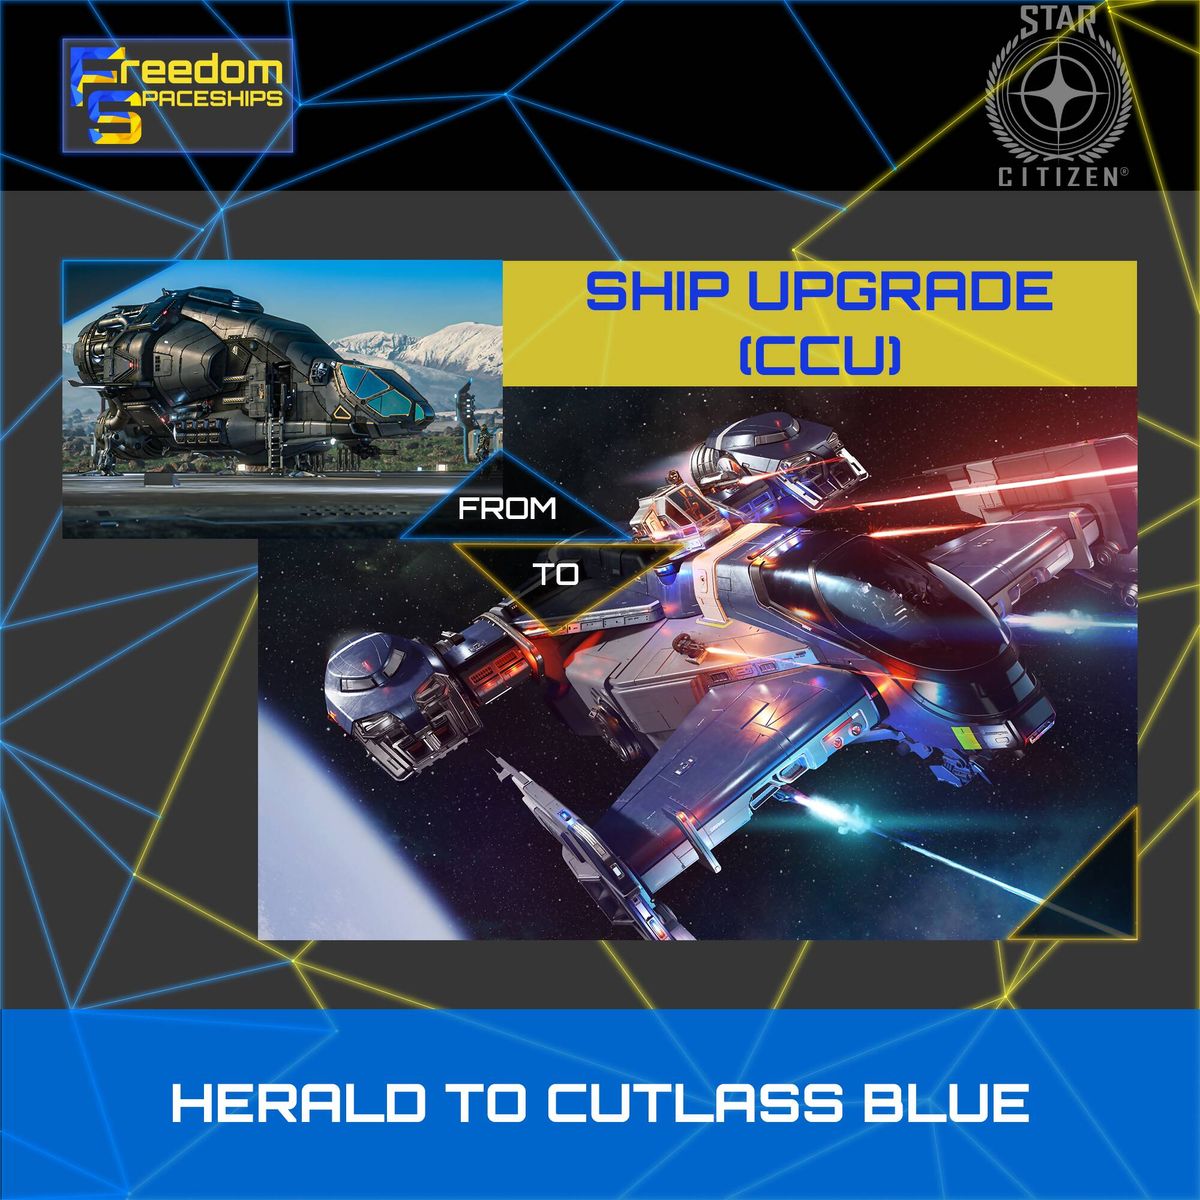 Upgrade - Herald to Cutlass Blue